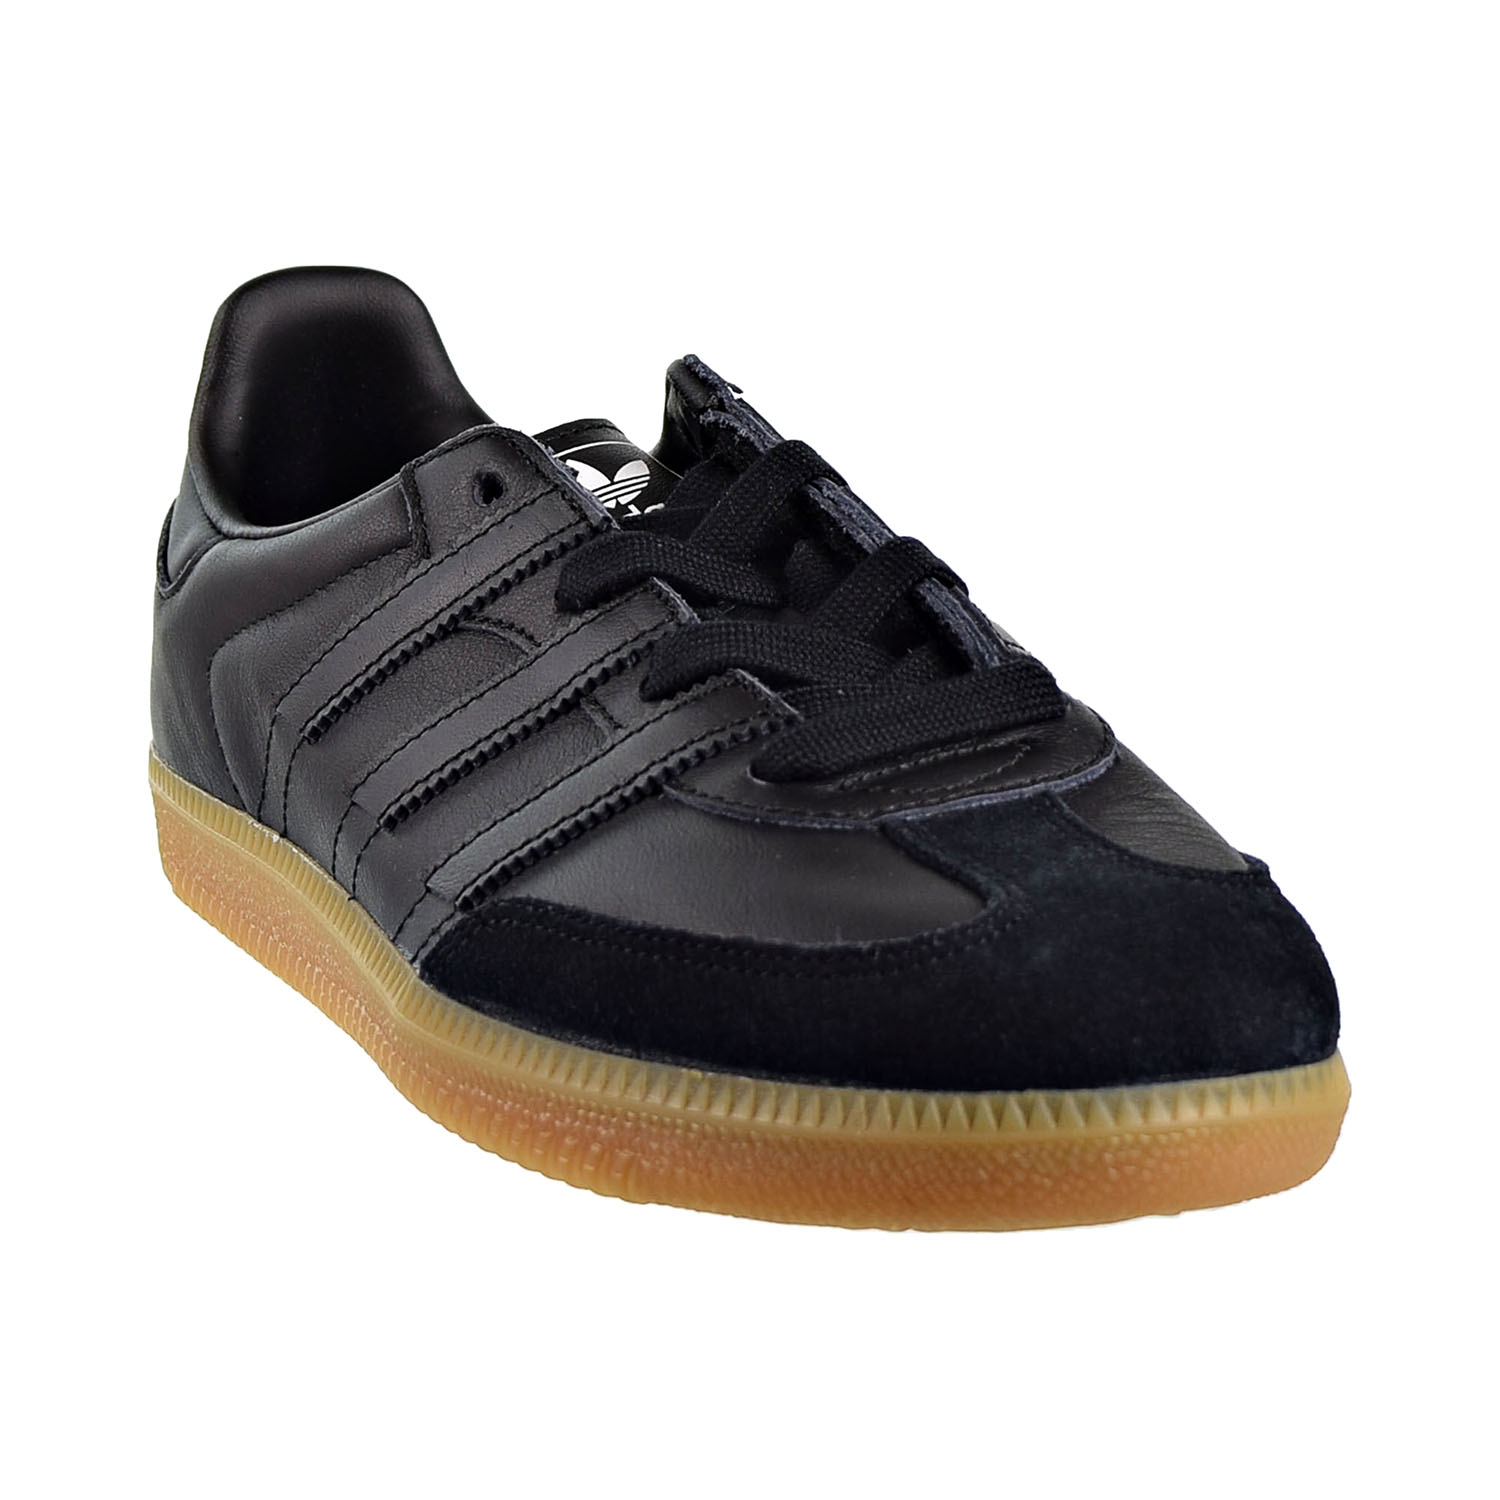 adidas samba og core black & gum shoes